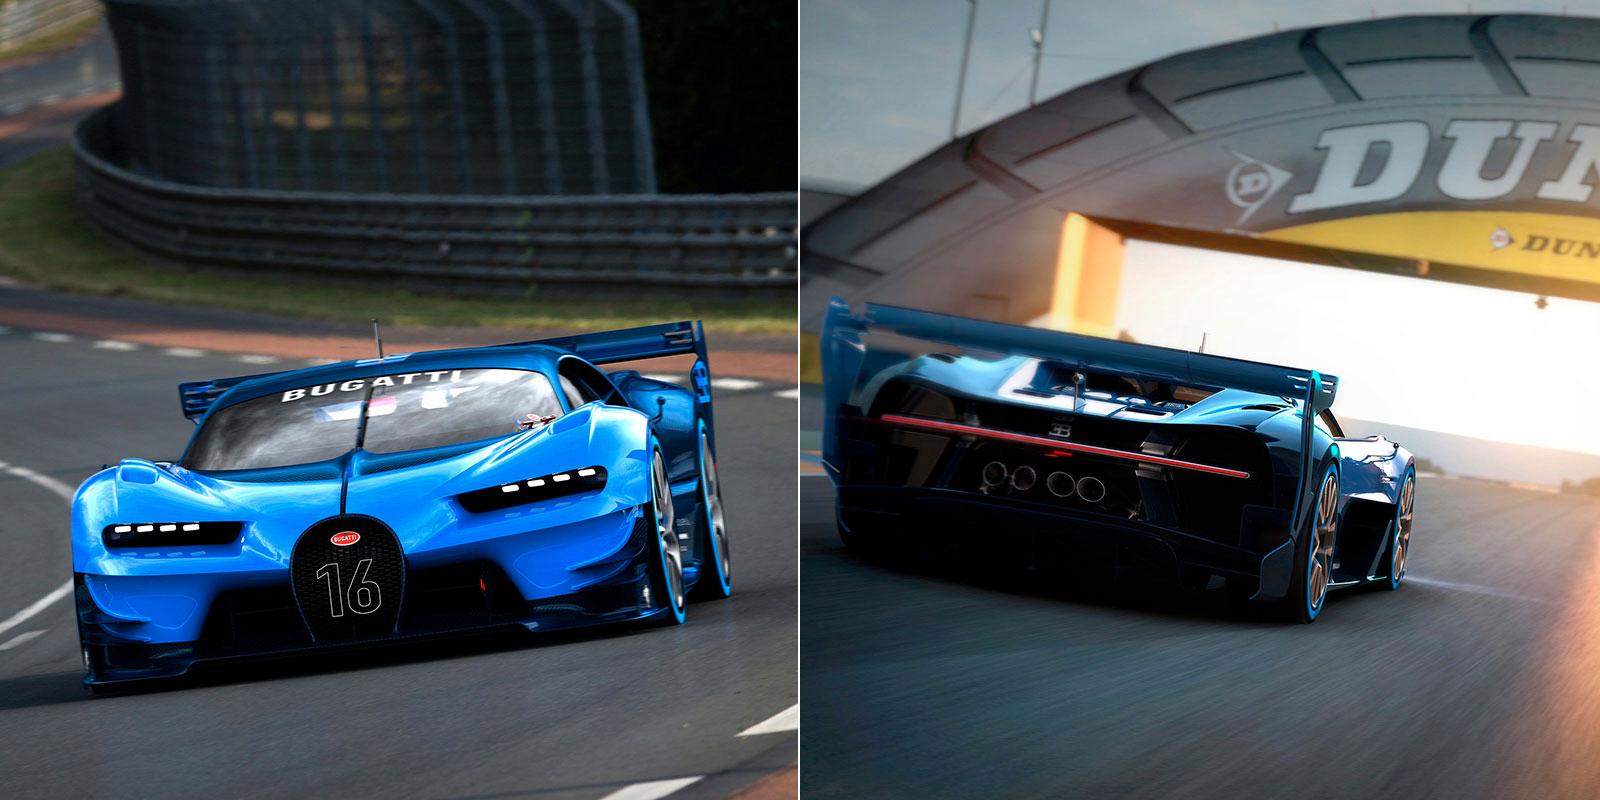 ”En bil för fansen”. Så beskriver Bugatti sitt Gran Turismo-koncept. Bilen är spelbar i tv-spelet Gran Turismo 6.